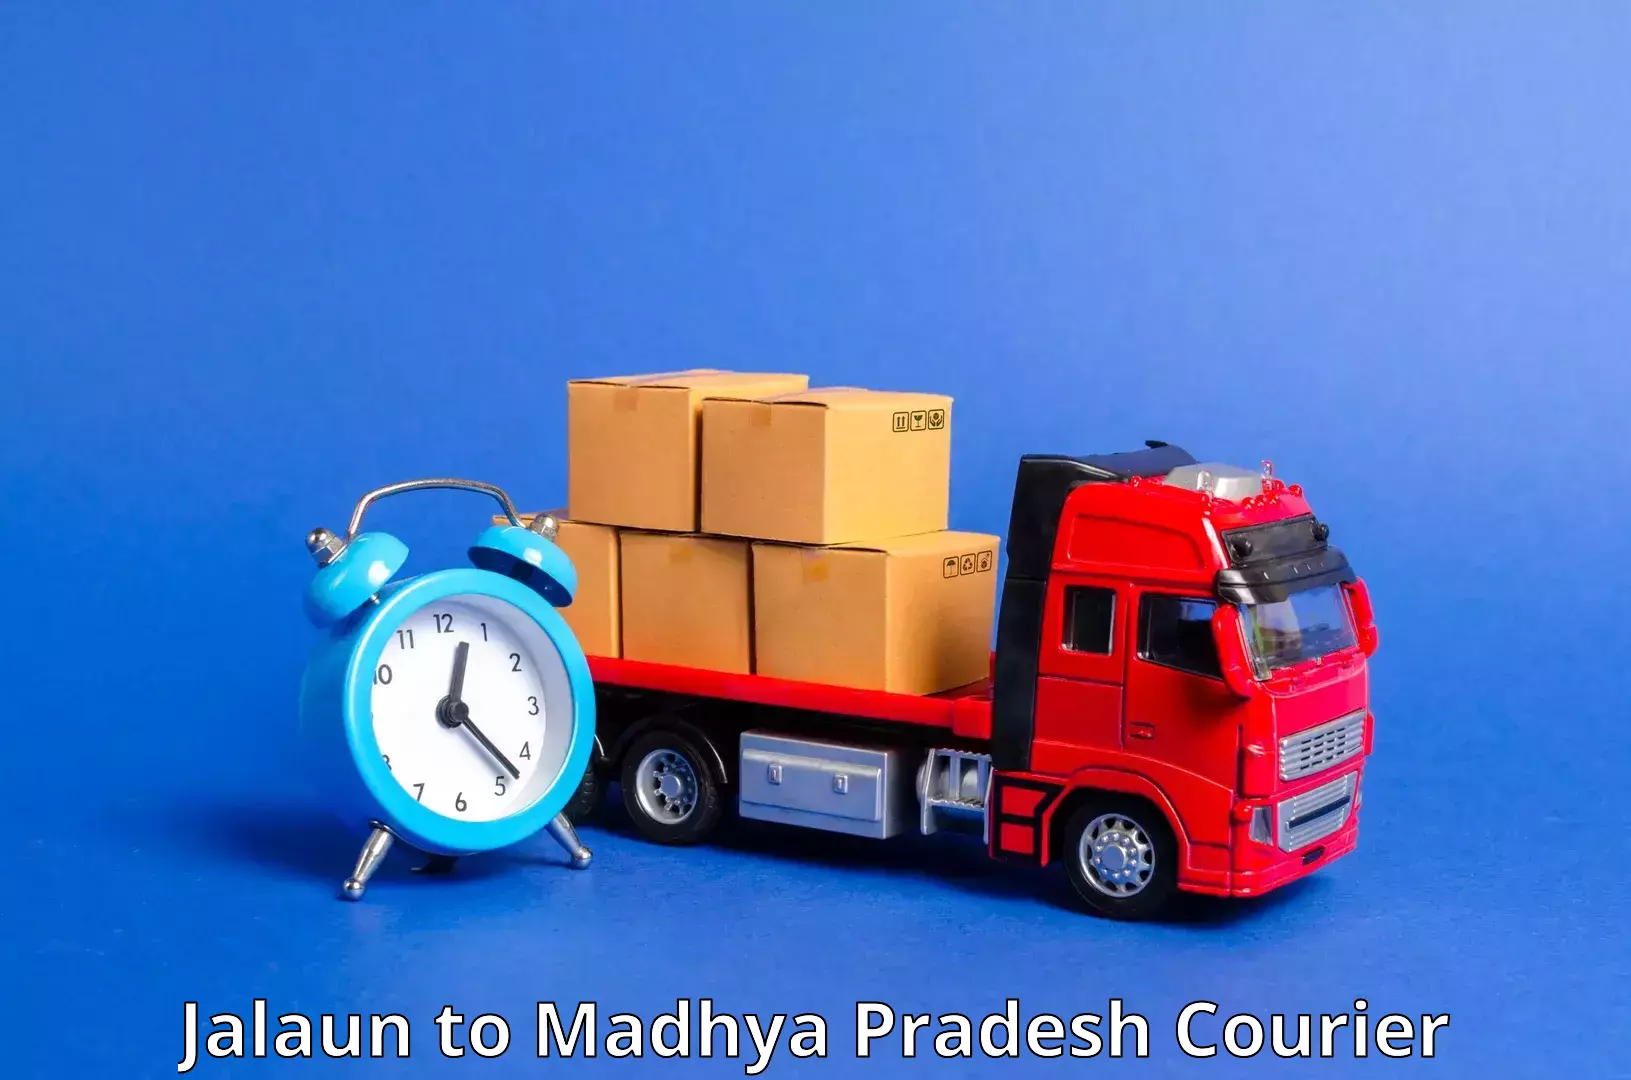 Express logistics service Jalaun to Ashoknagar